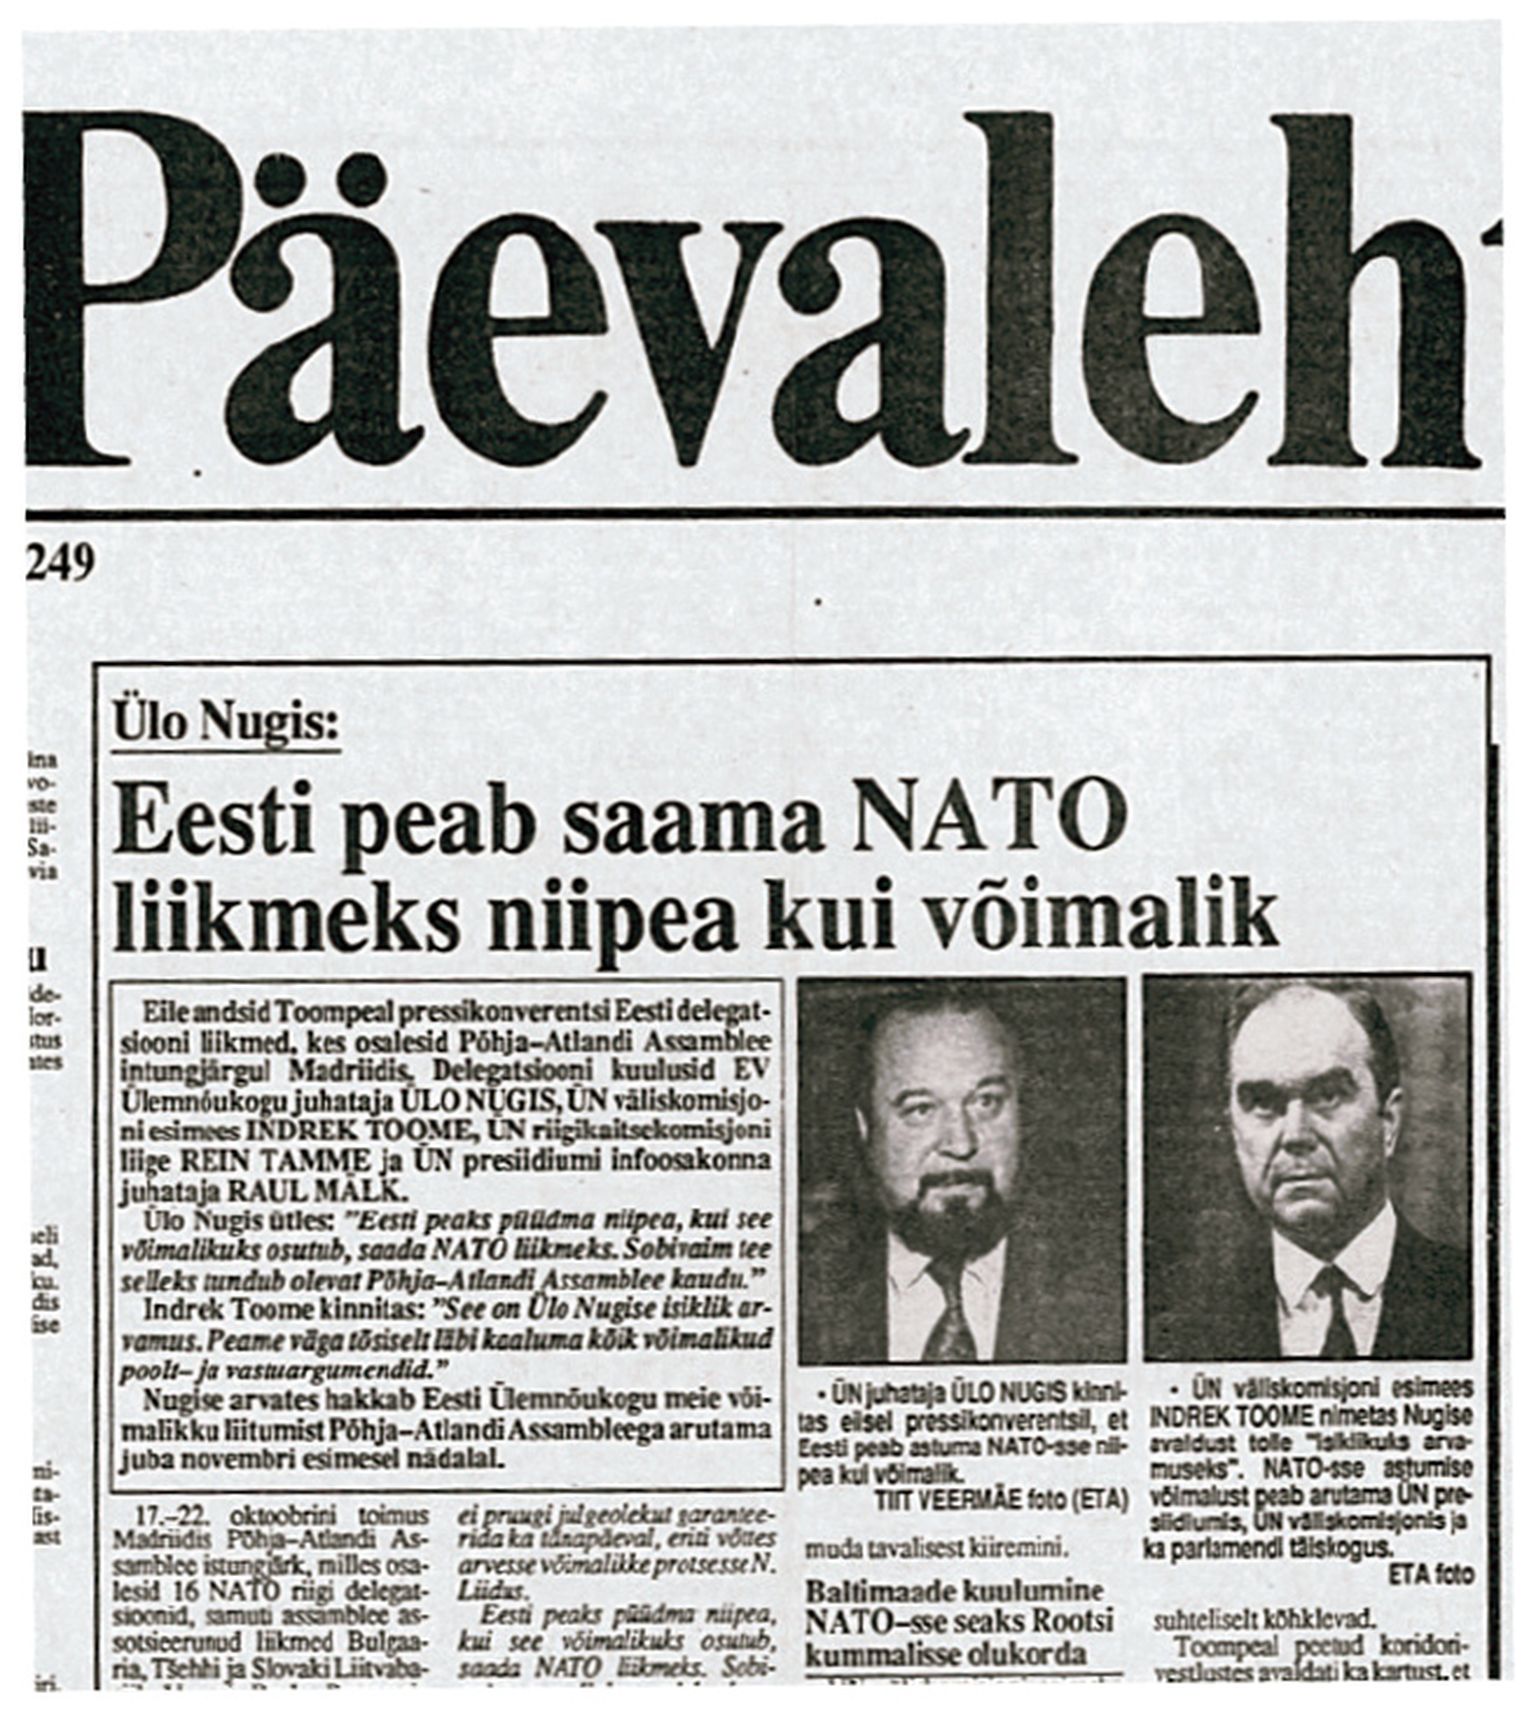 Ülo Nugis tegi esimese Eesti poliitikuna ettepaneku liituda võimalikult ruttu NATOga.